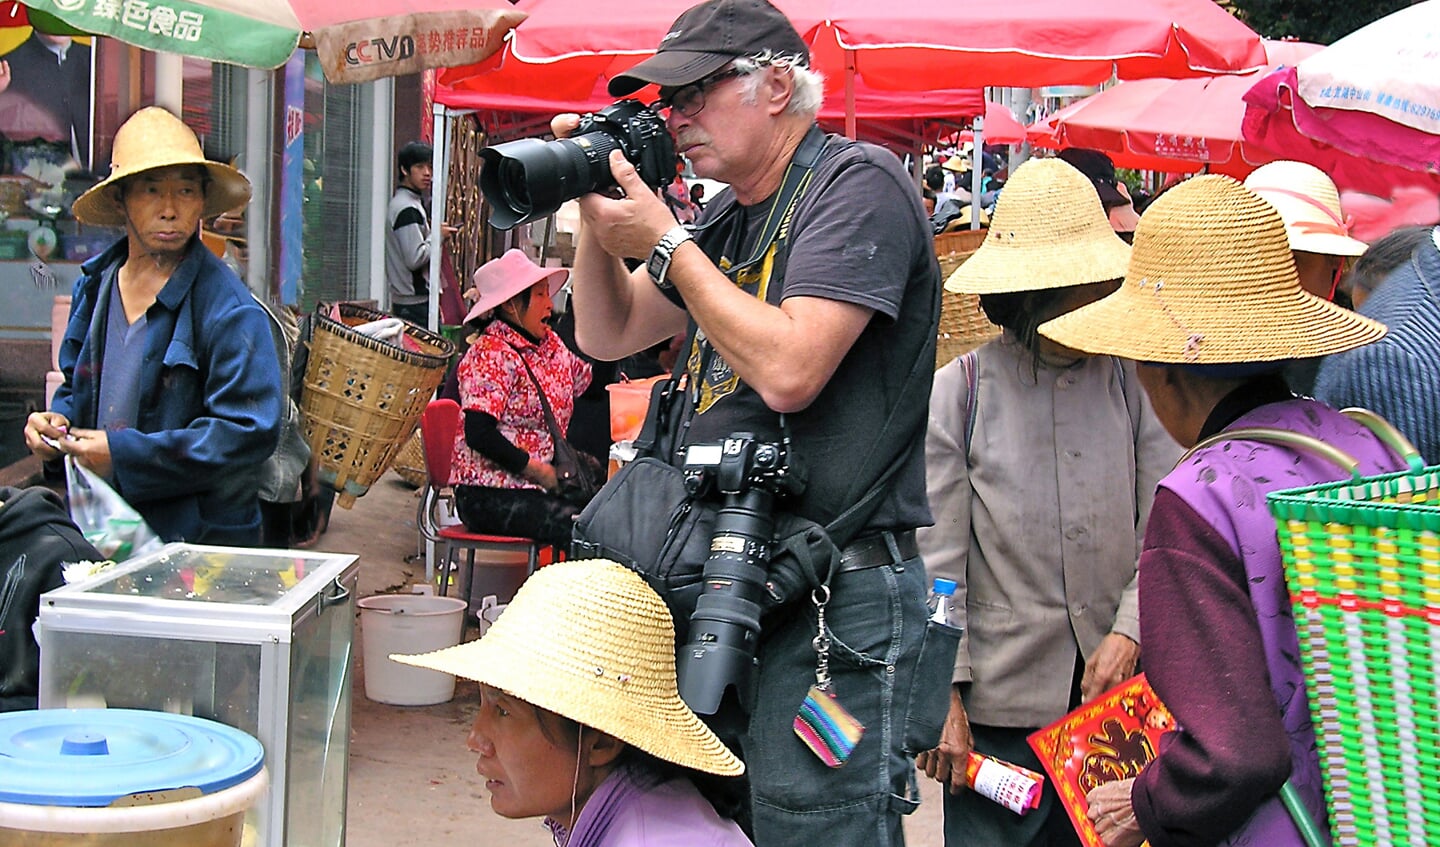 Jacques Plouvier aan het fotograferen op een marktje in het Chinese Yunnan.